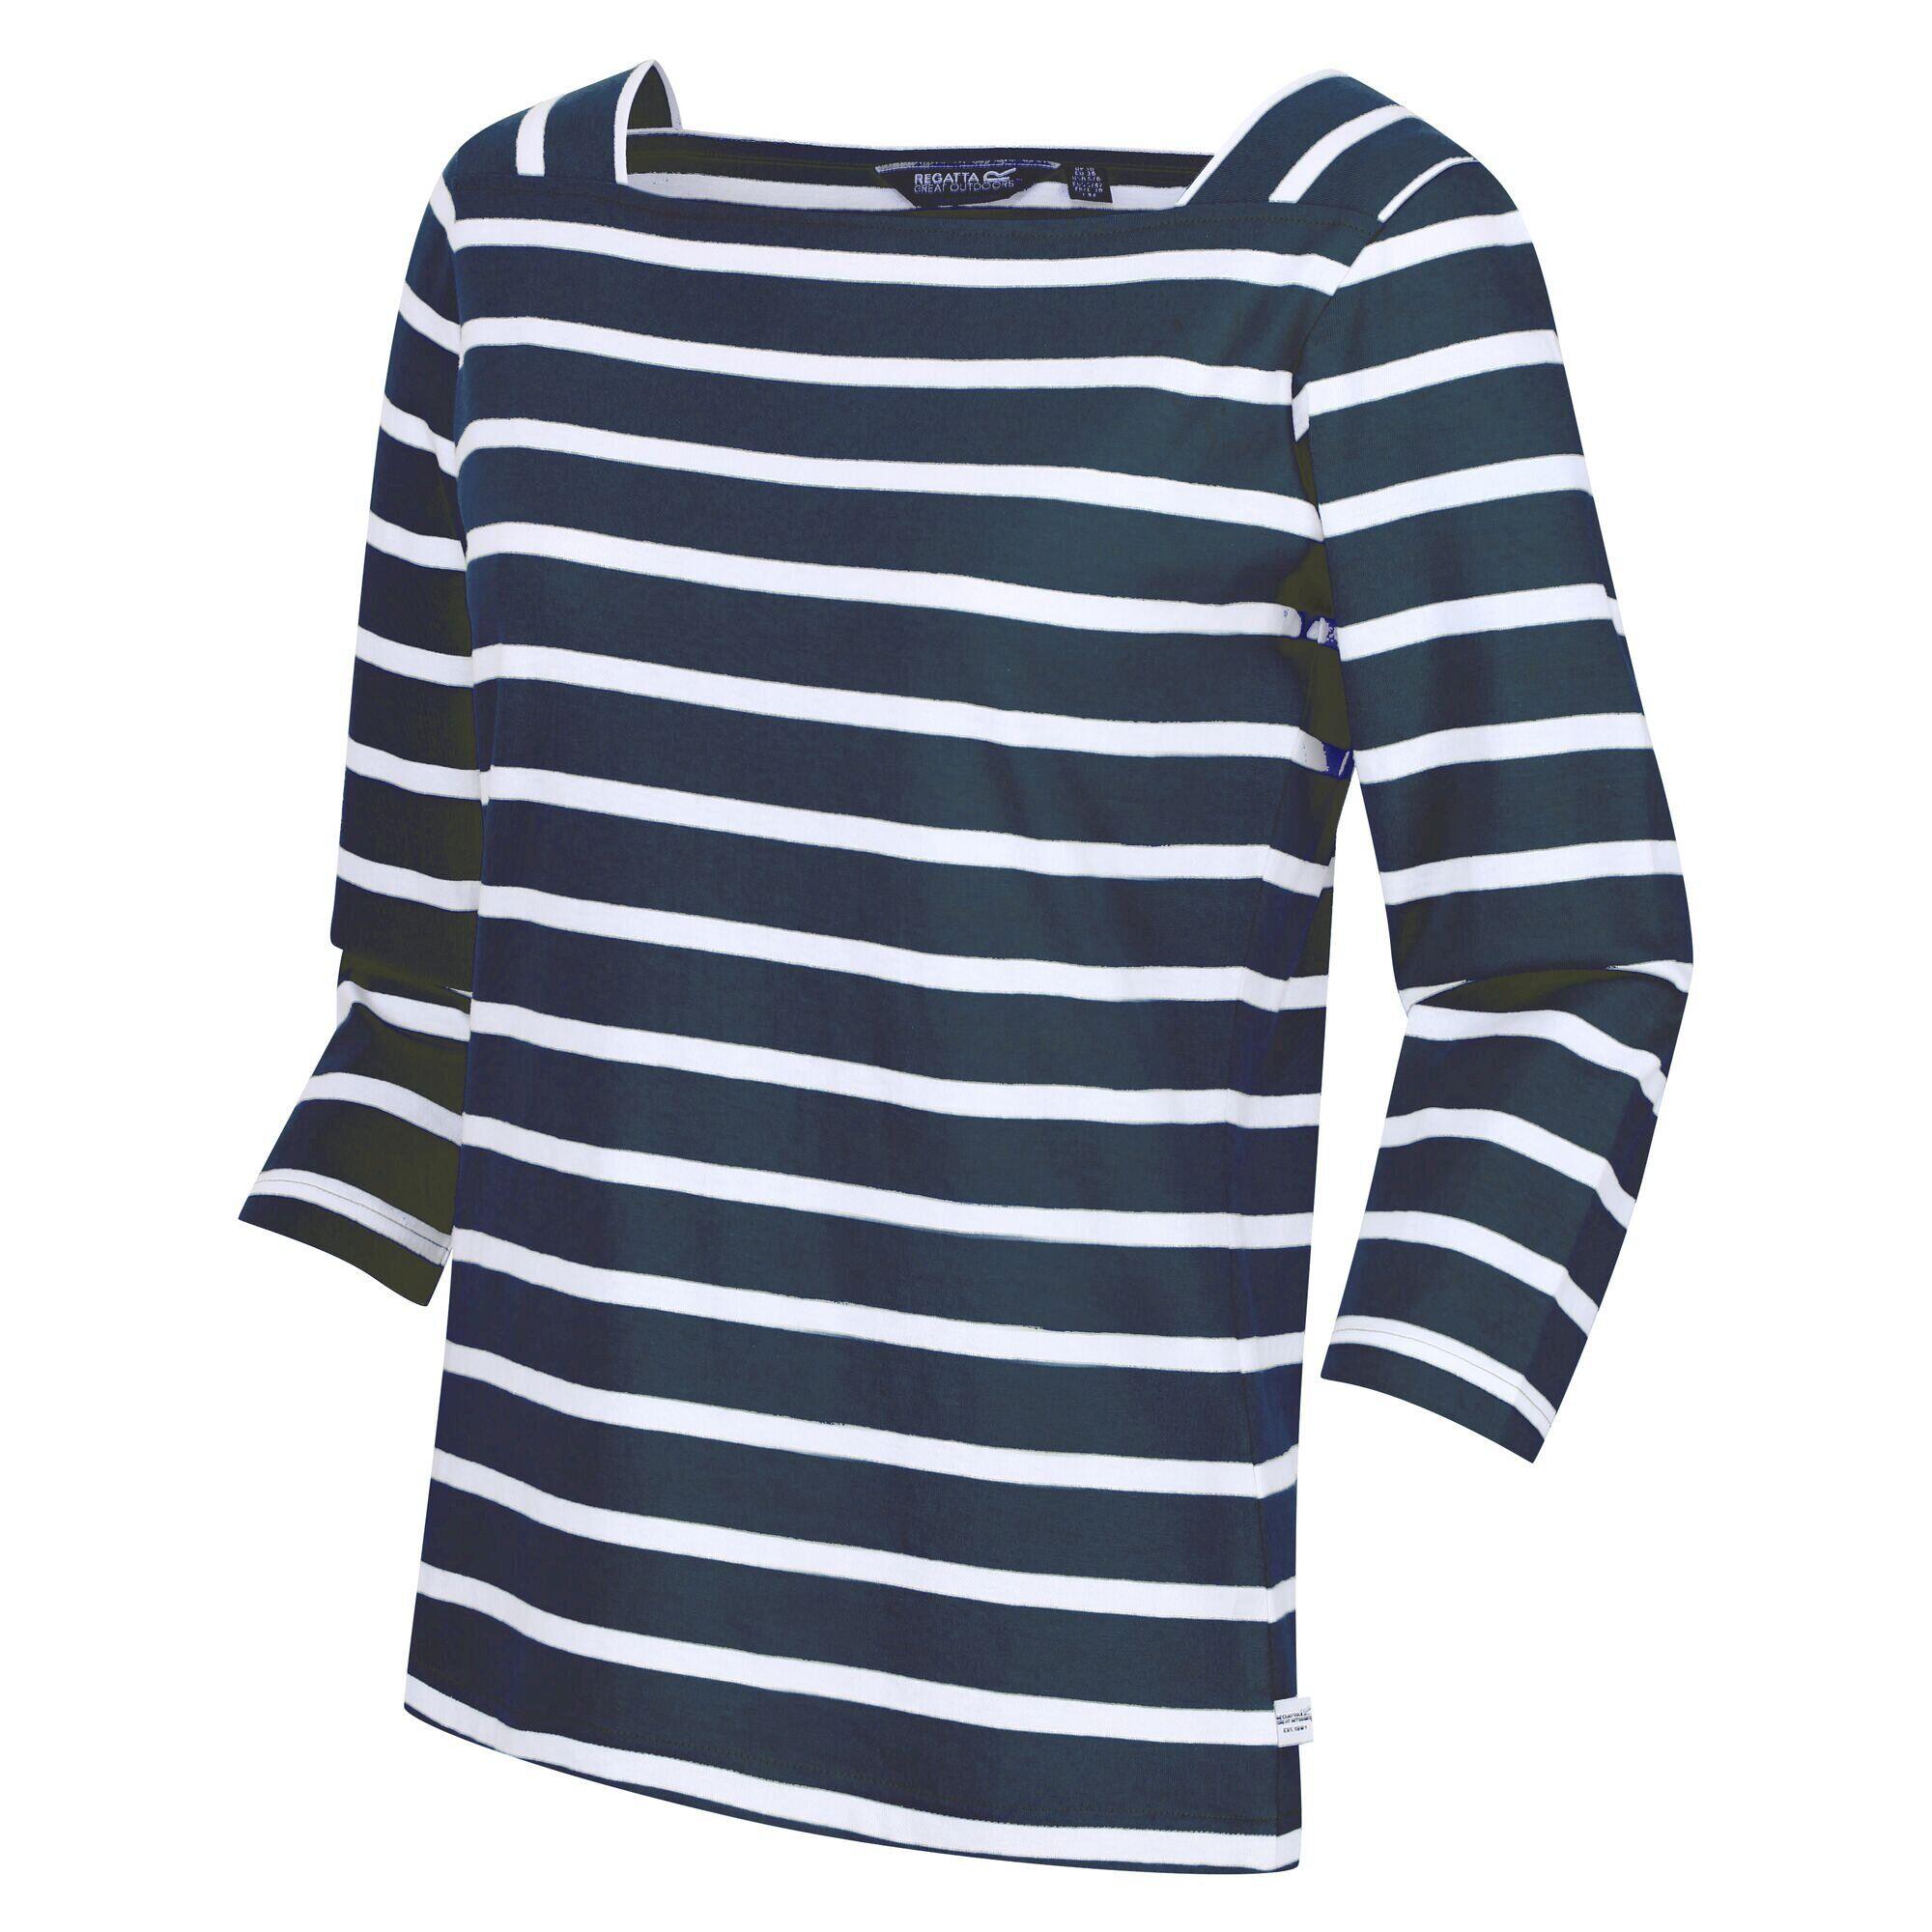 Womens/Ladies Polexia Stripe TShirt (Navy/White) 4/5